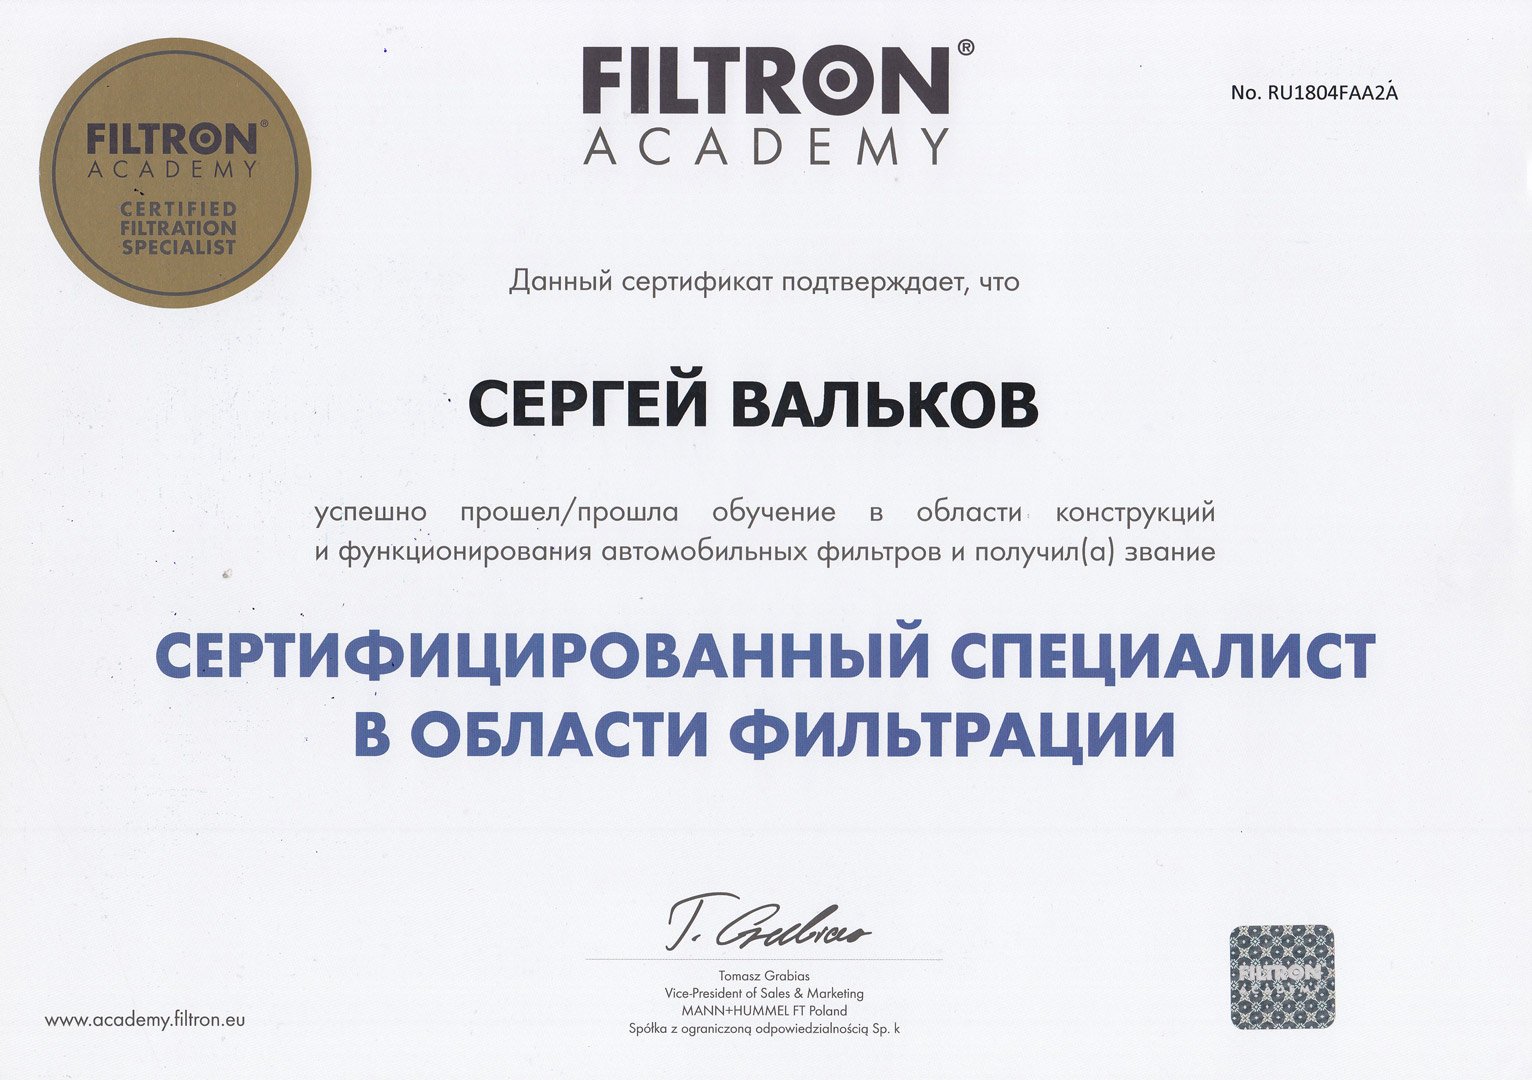 Filtron Academy